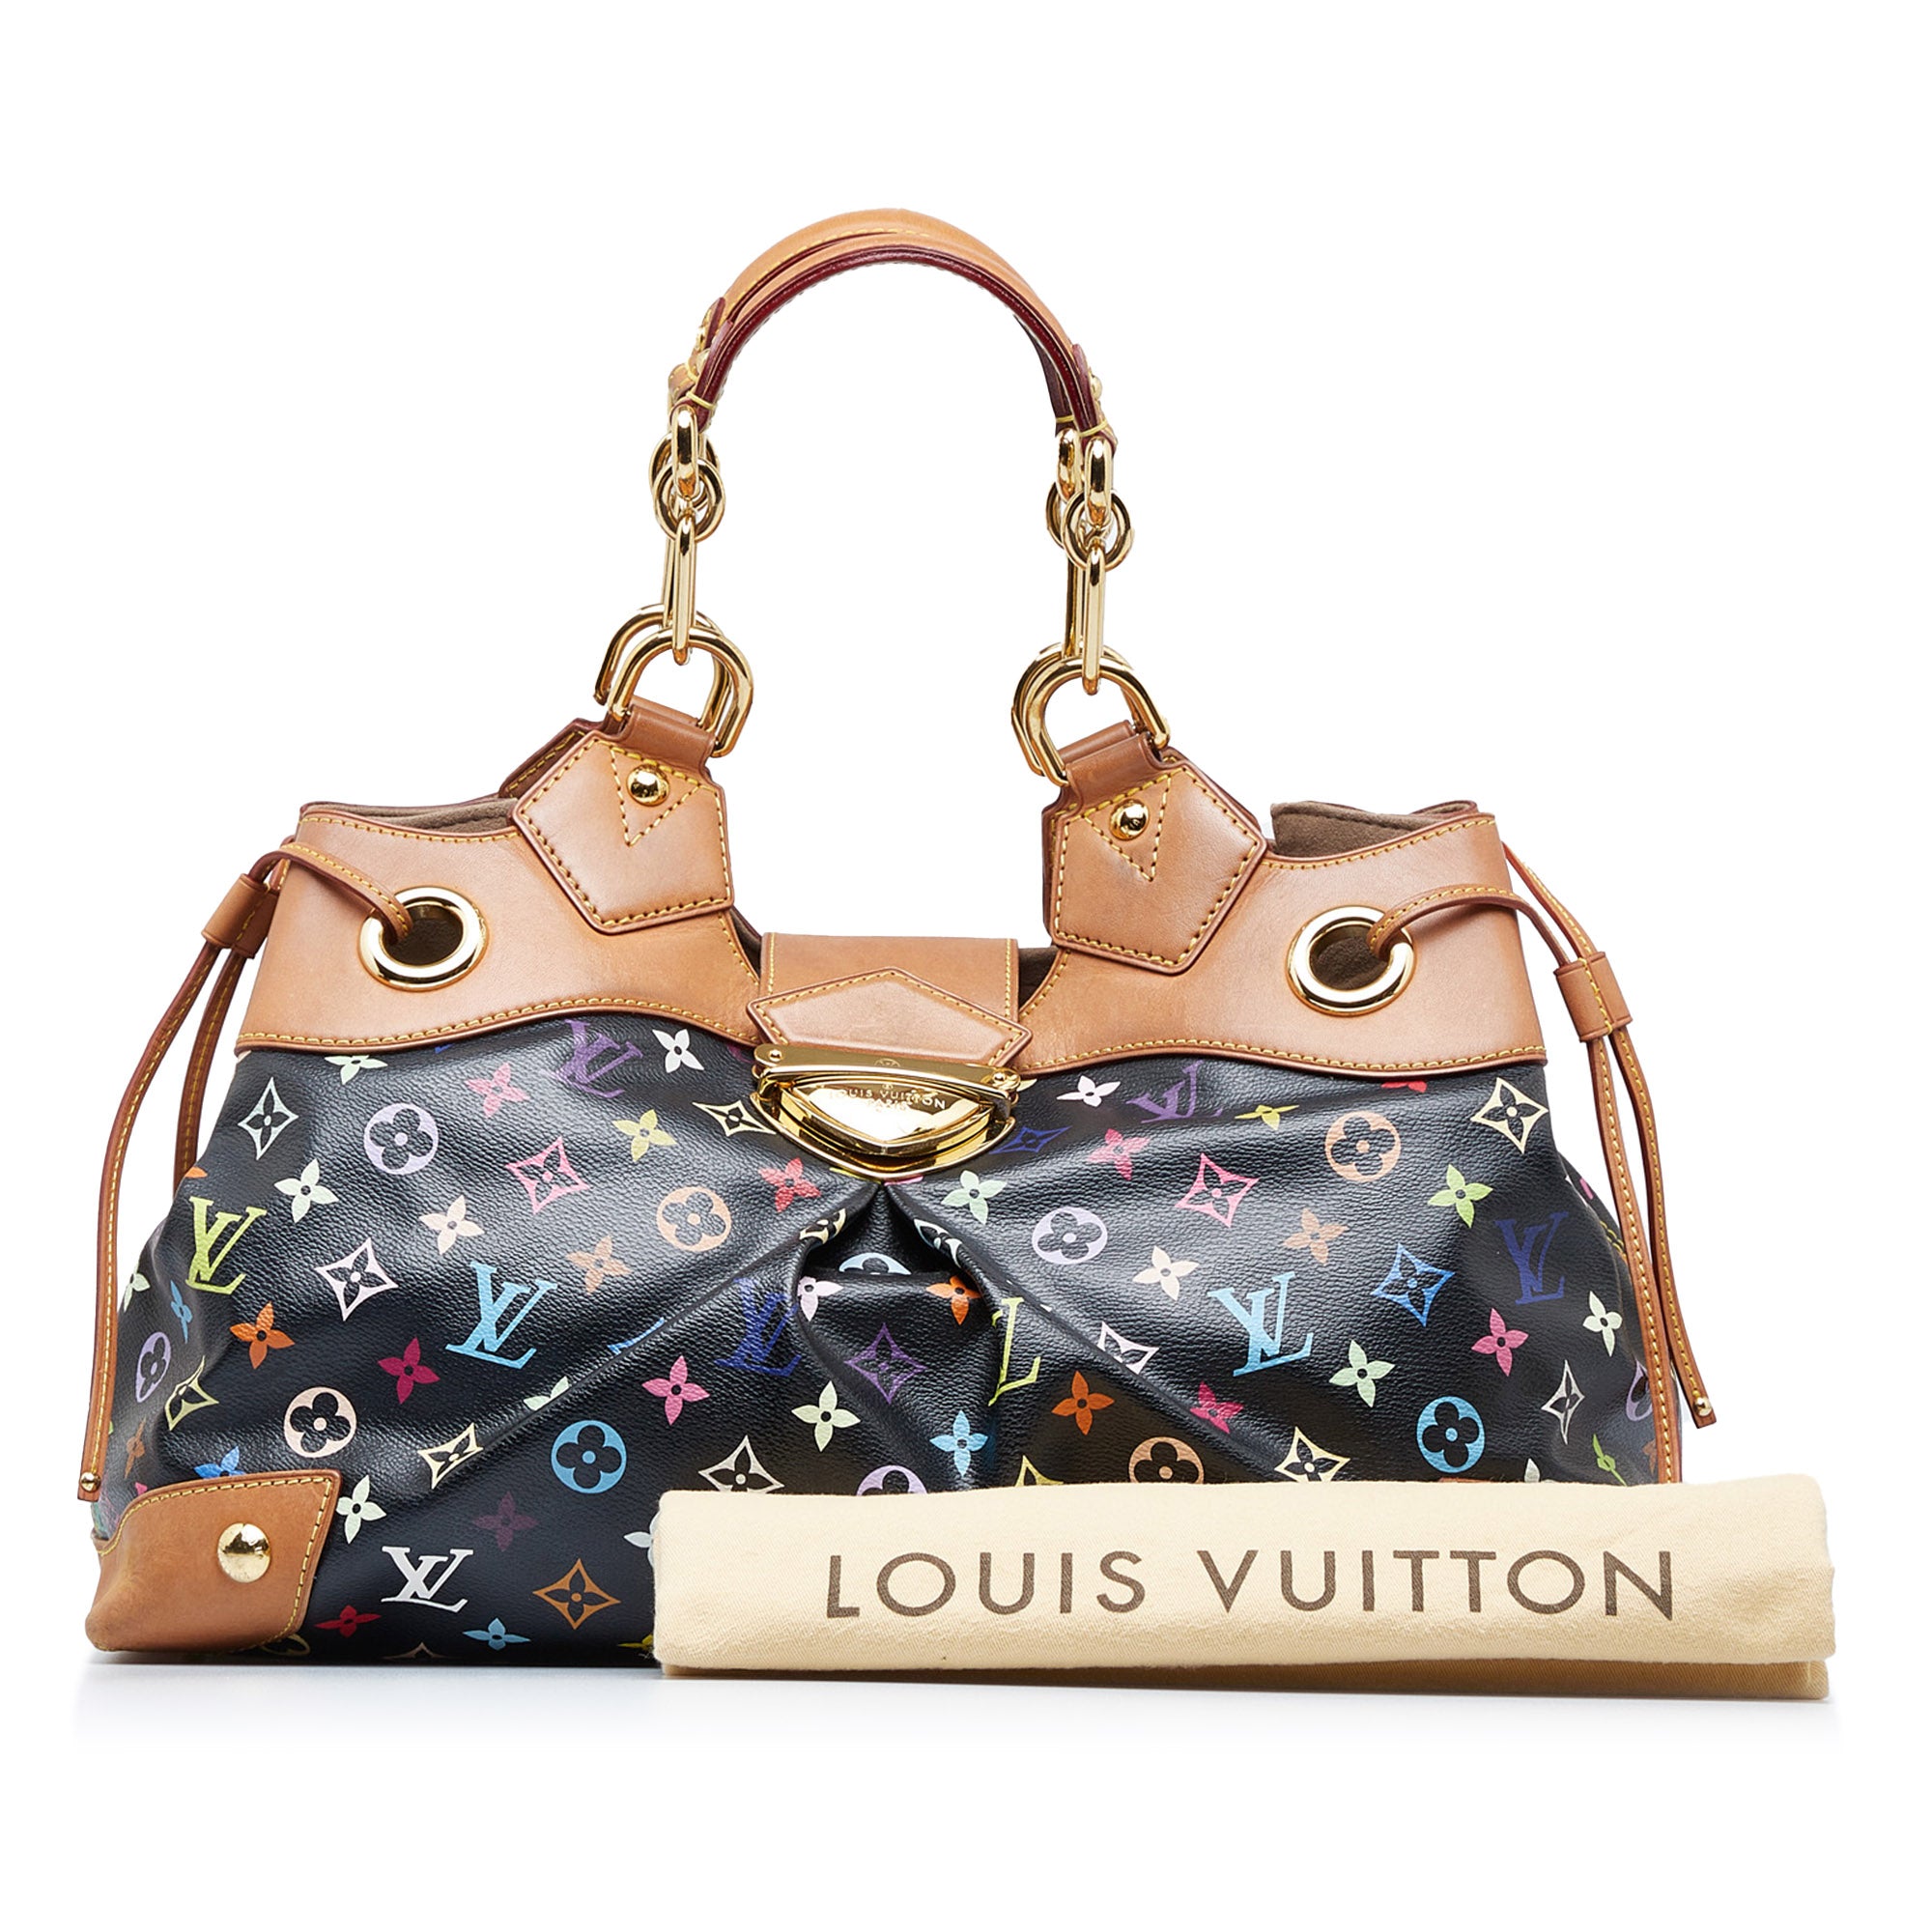 Louis Vuitton Ursula Handbag